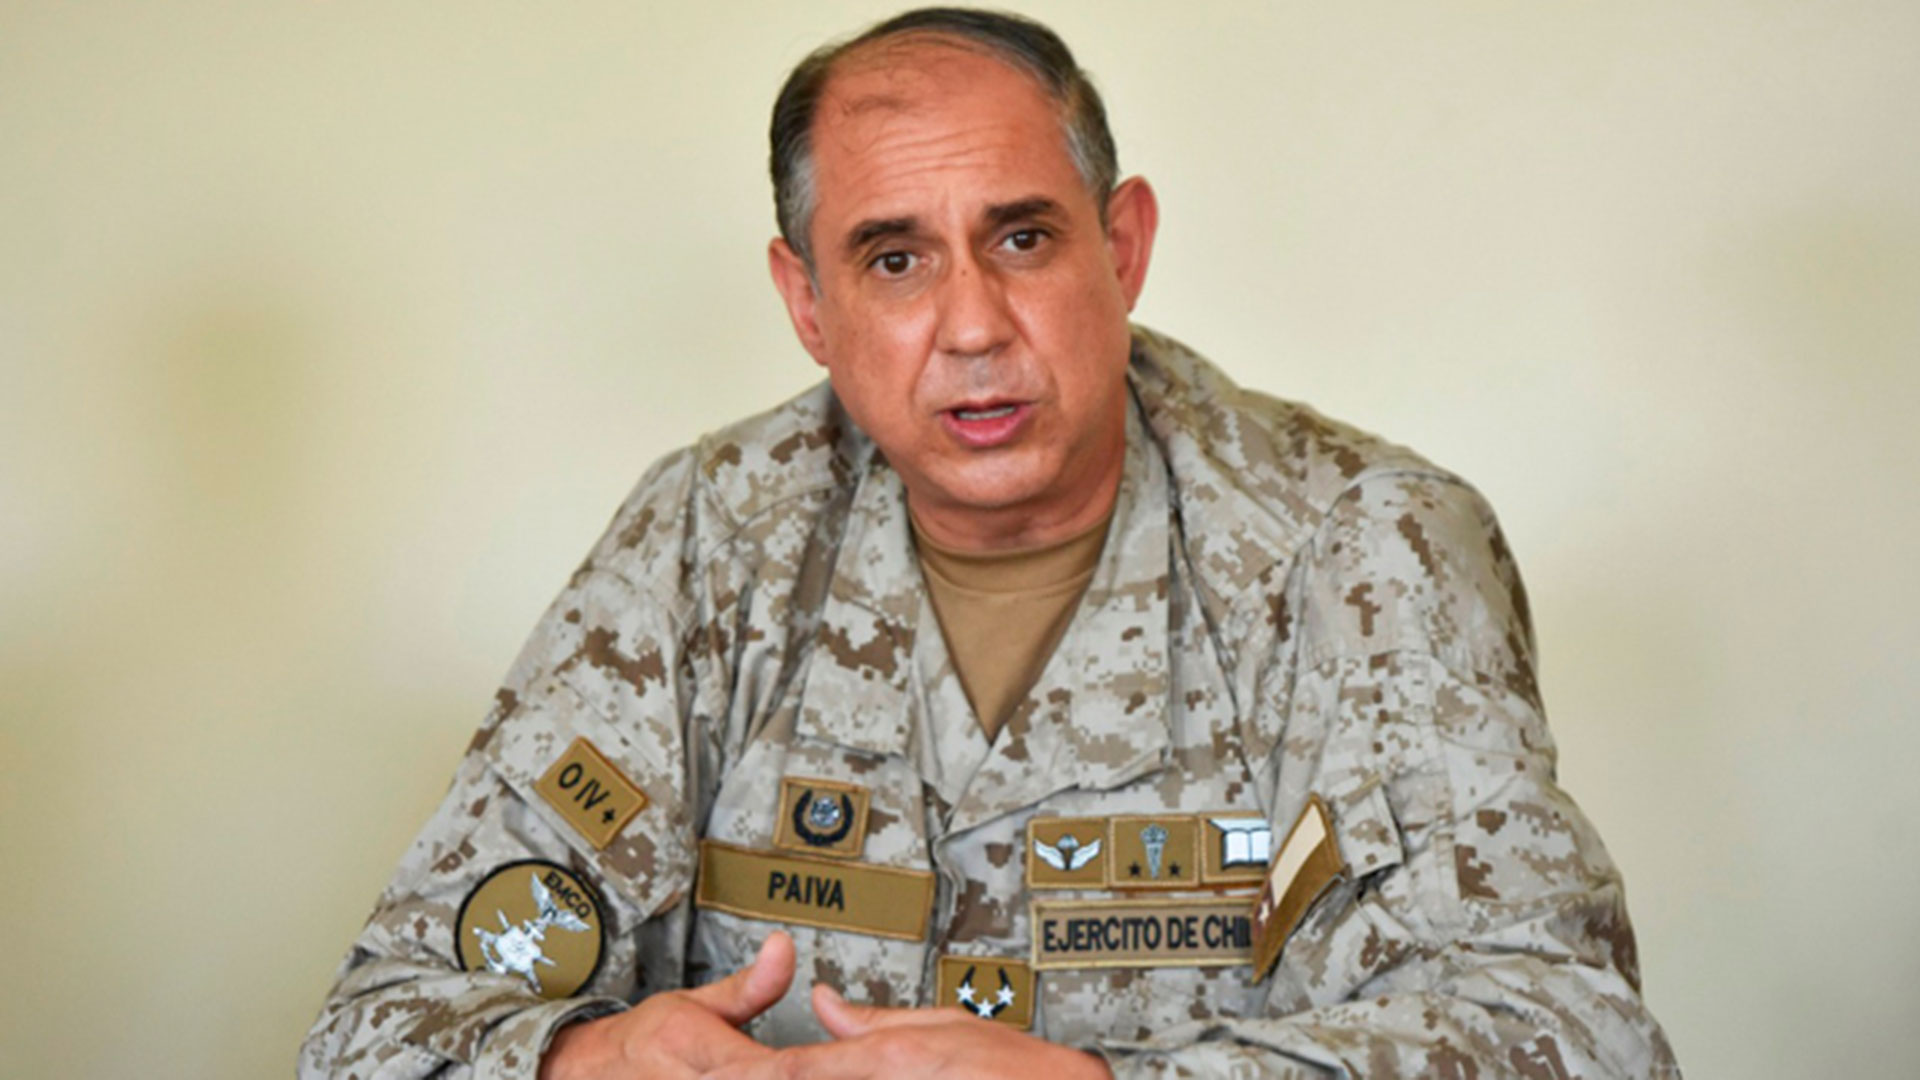 Guillermo Paiva, kepala Kepala Staf Gabungan (EMCO) Angkatan Bersenjata Chili (FF.AA), mengajukan pengunduran dirinya setelah kebocoran dokumen